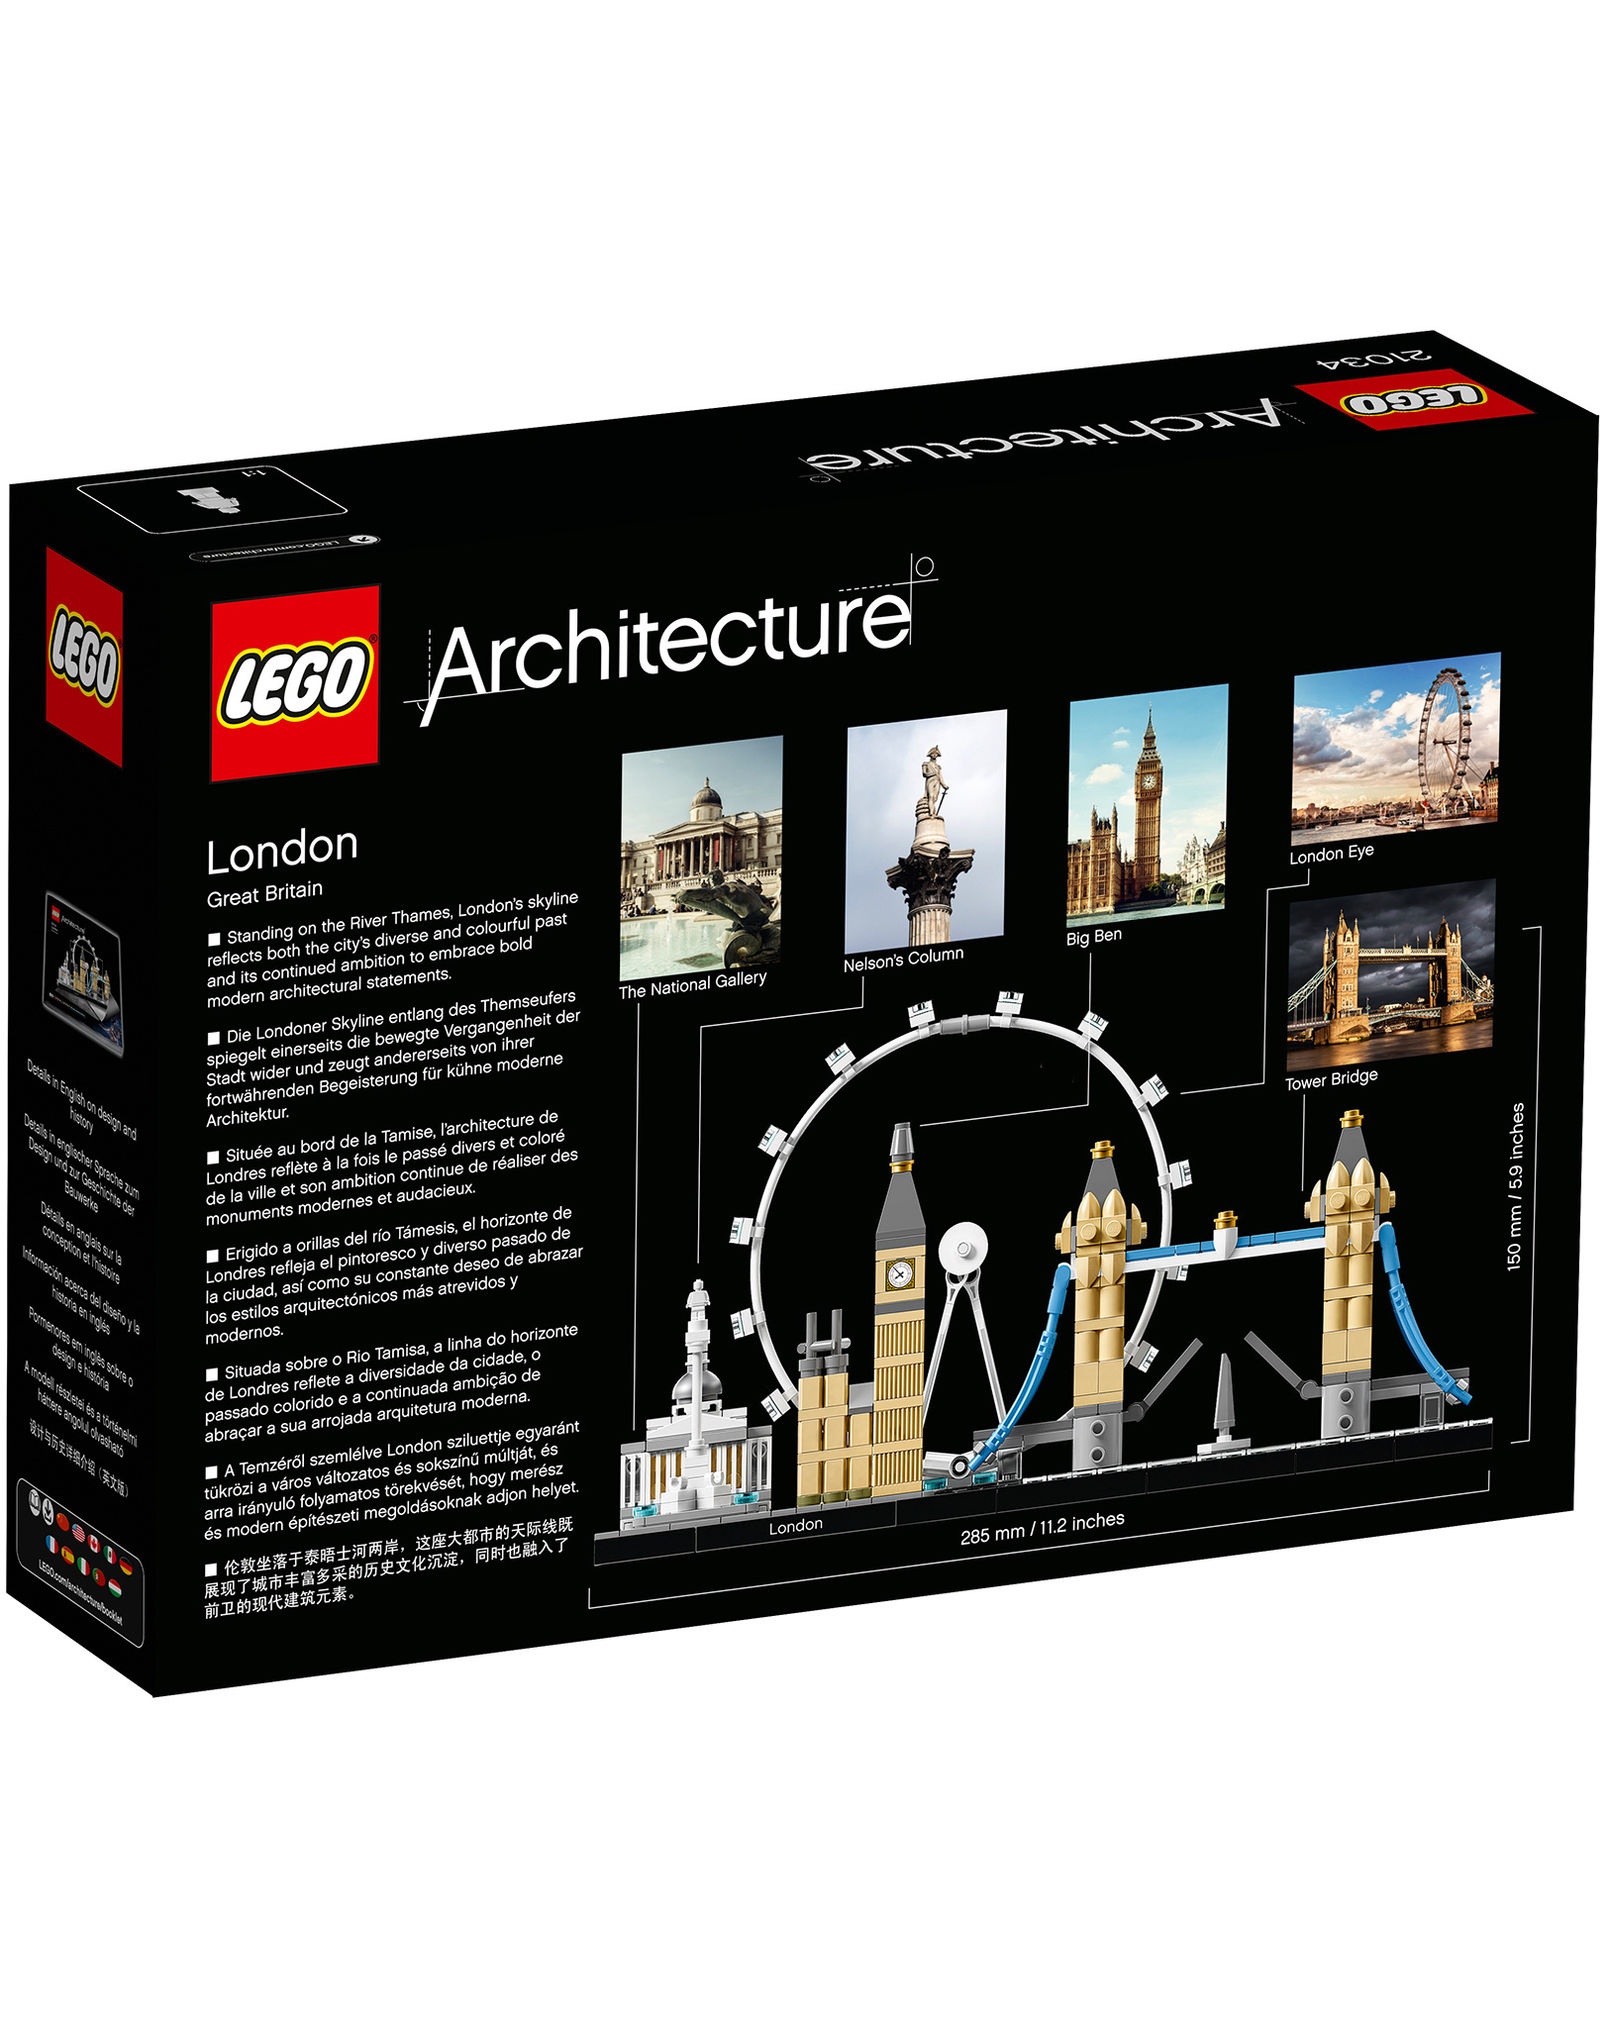 LEGO® 21034 Architecture London jetzt bei Weltbild.at bestellen